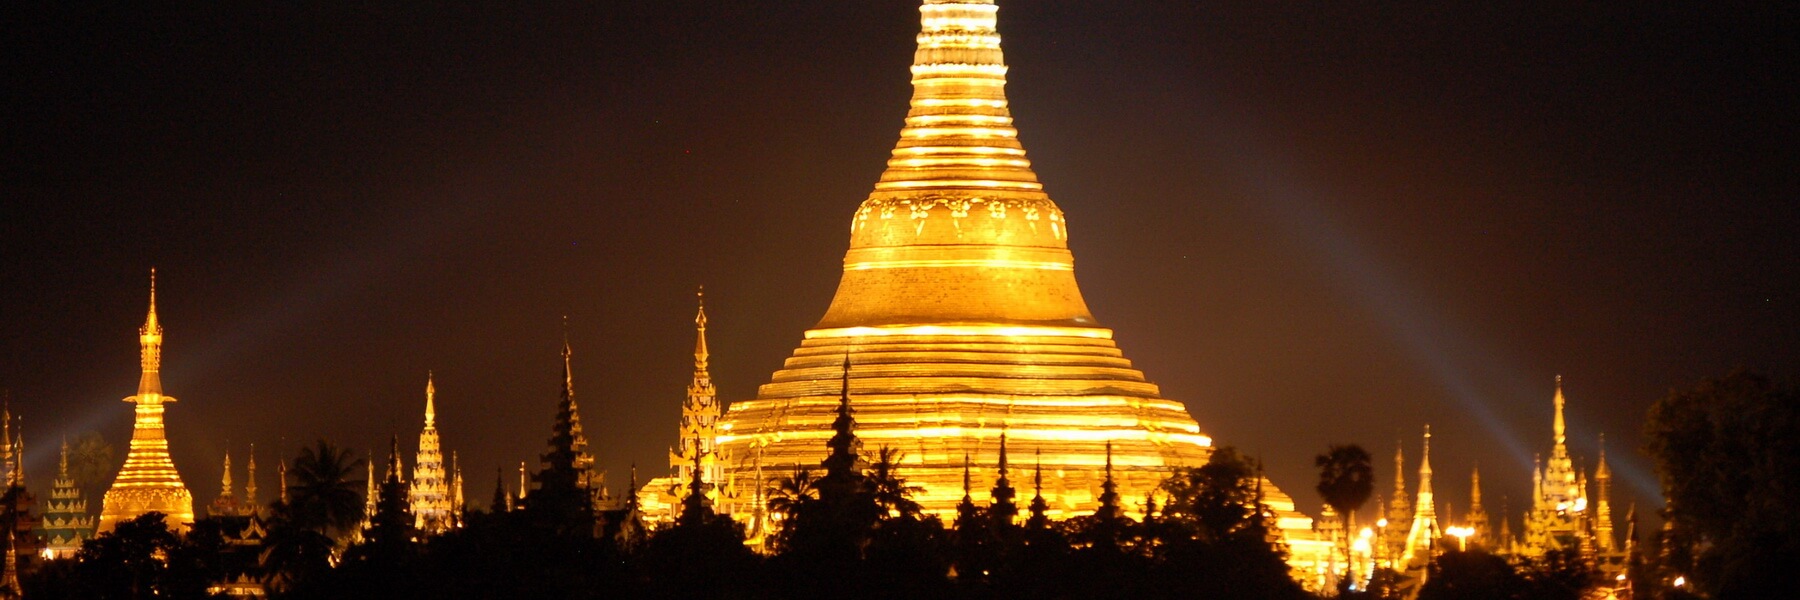 Die als Wahrzeichen des ganzen Landes geltende Shwedagon Pagode bietet besonders bei Nacht einen spektakulären Anblick.